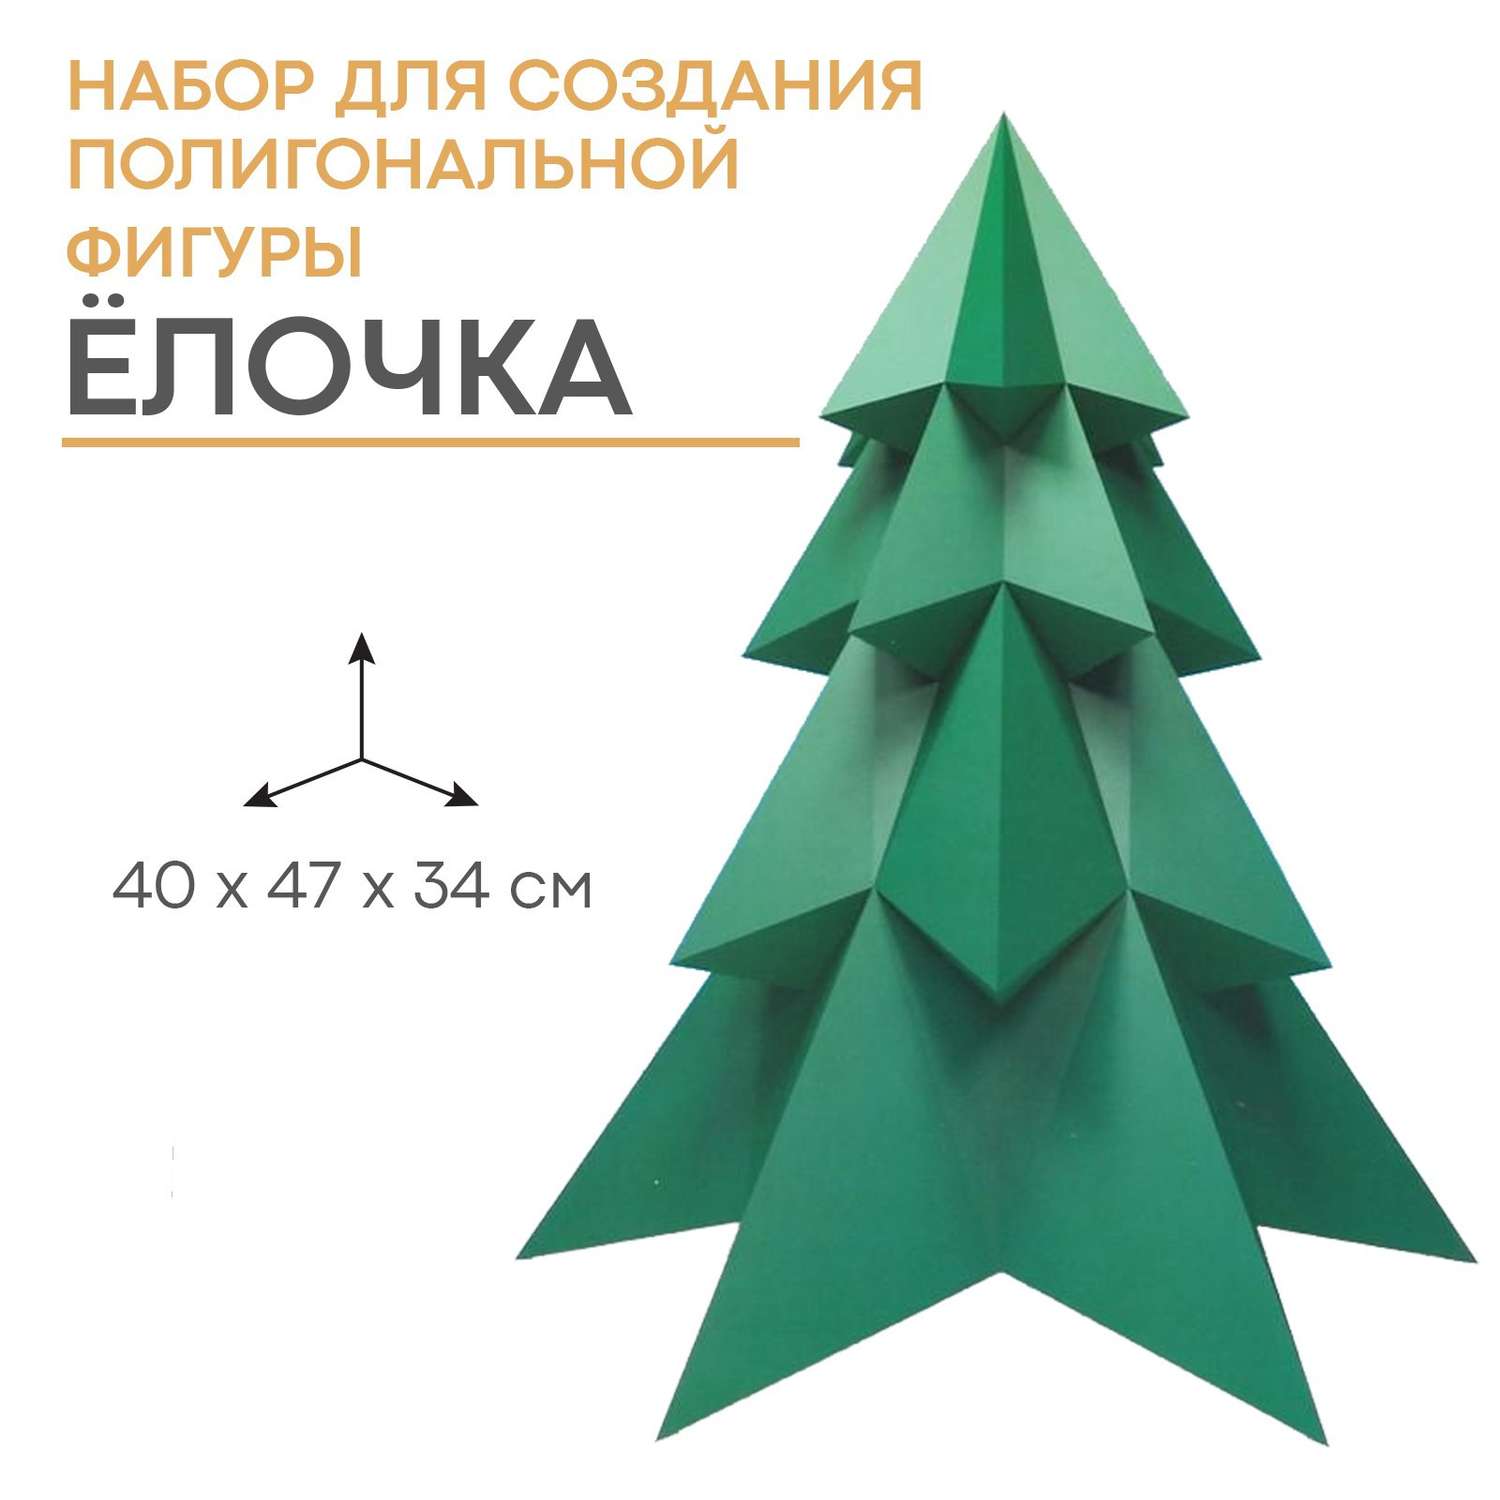 Набор Зимнее волшебство для создания полигональной фигуры «Ёлочка» 32.5х44 см - фото 1